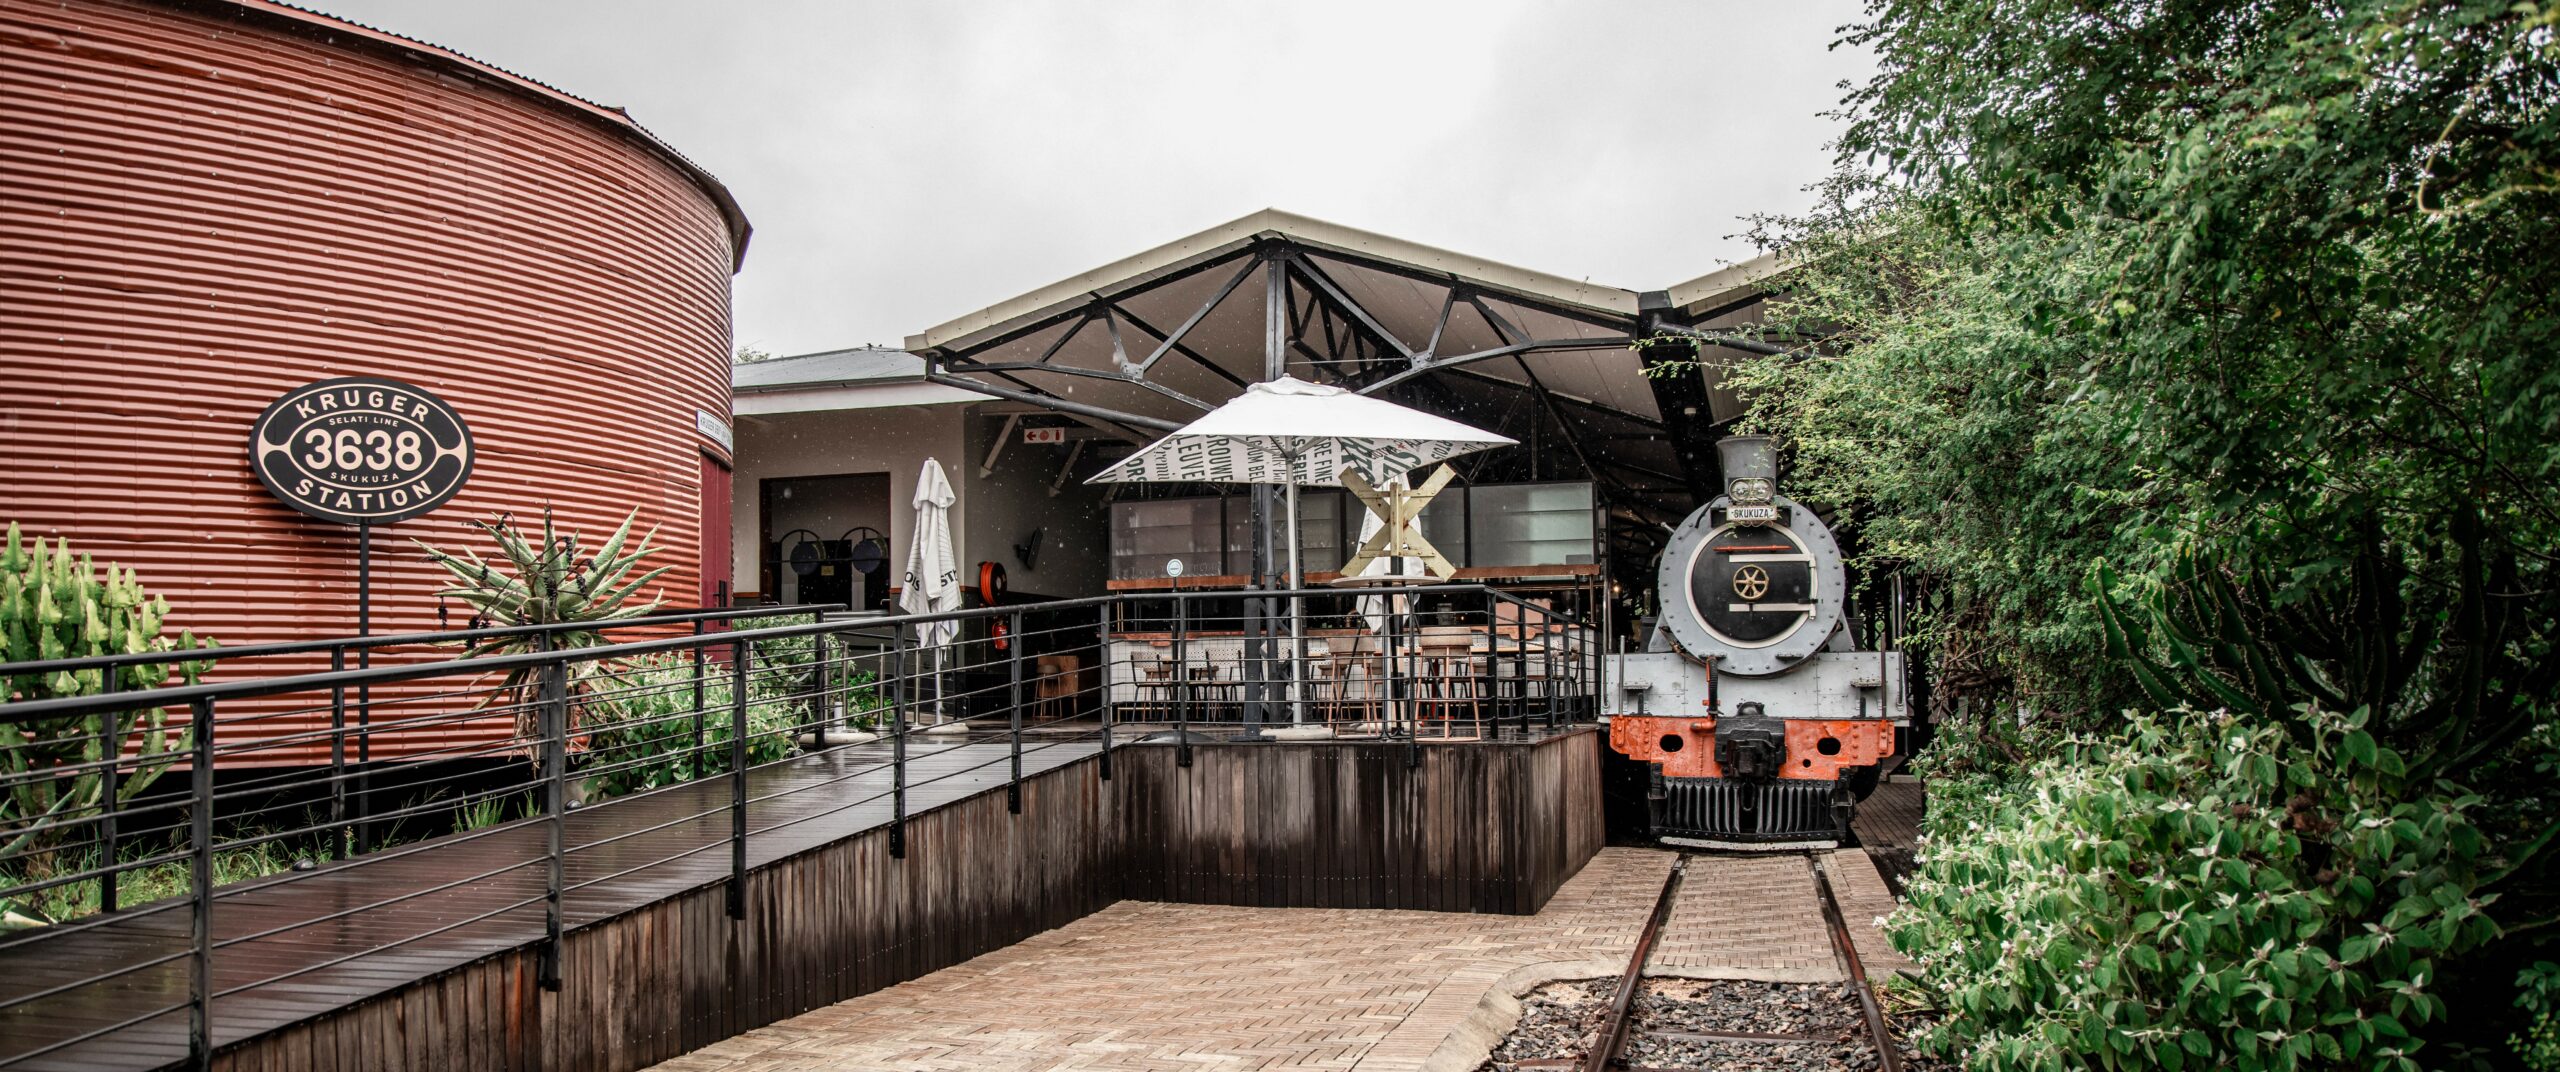 Kruger Station